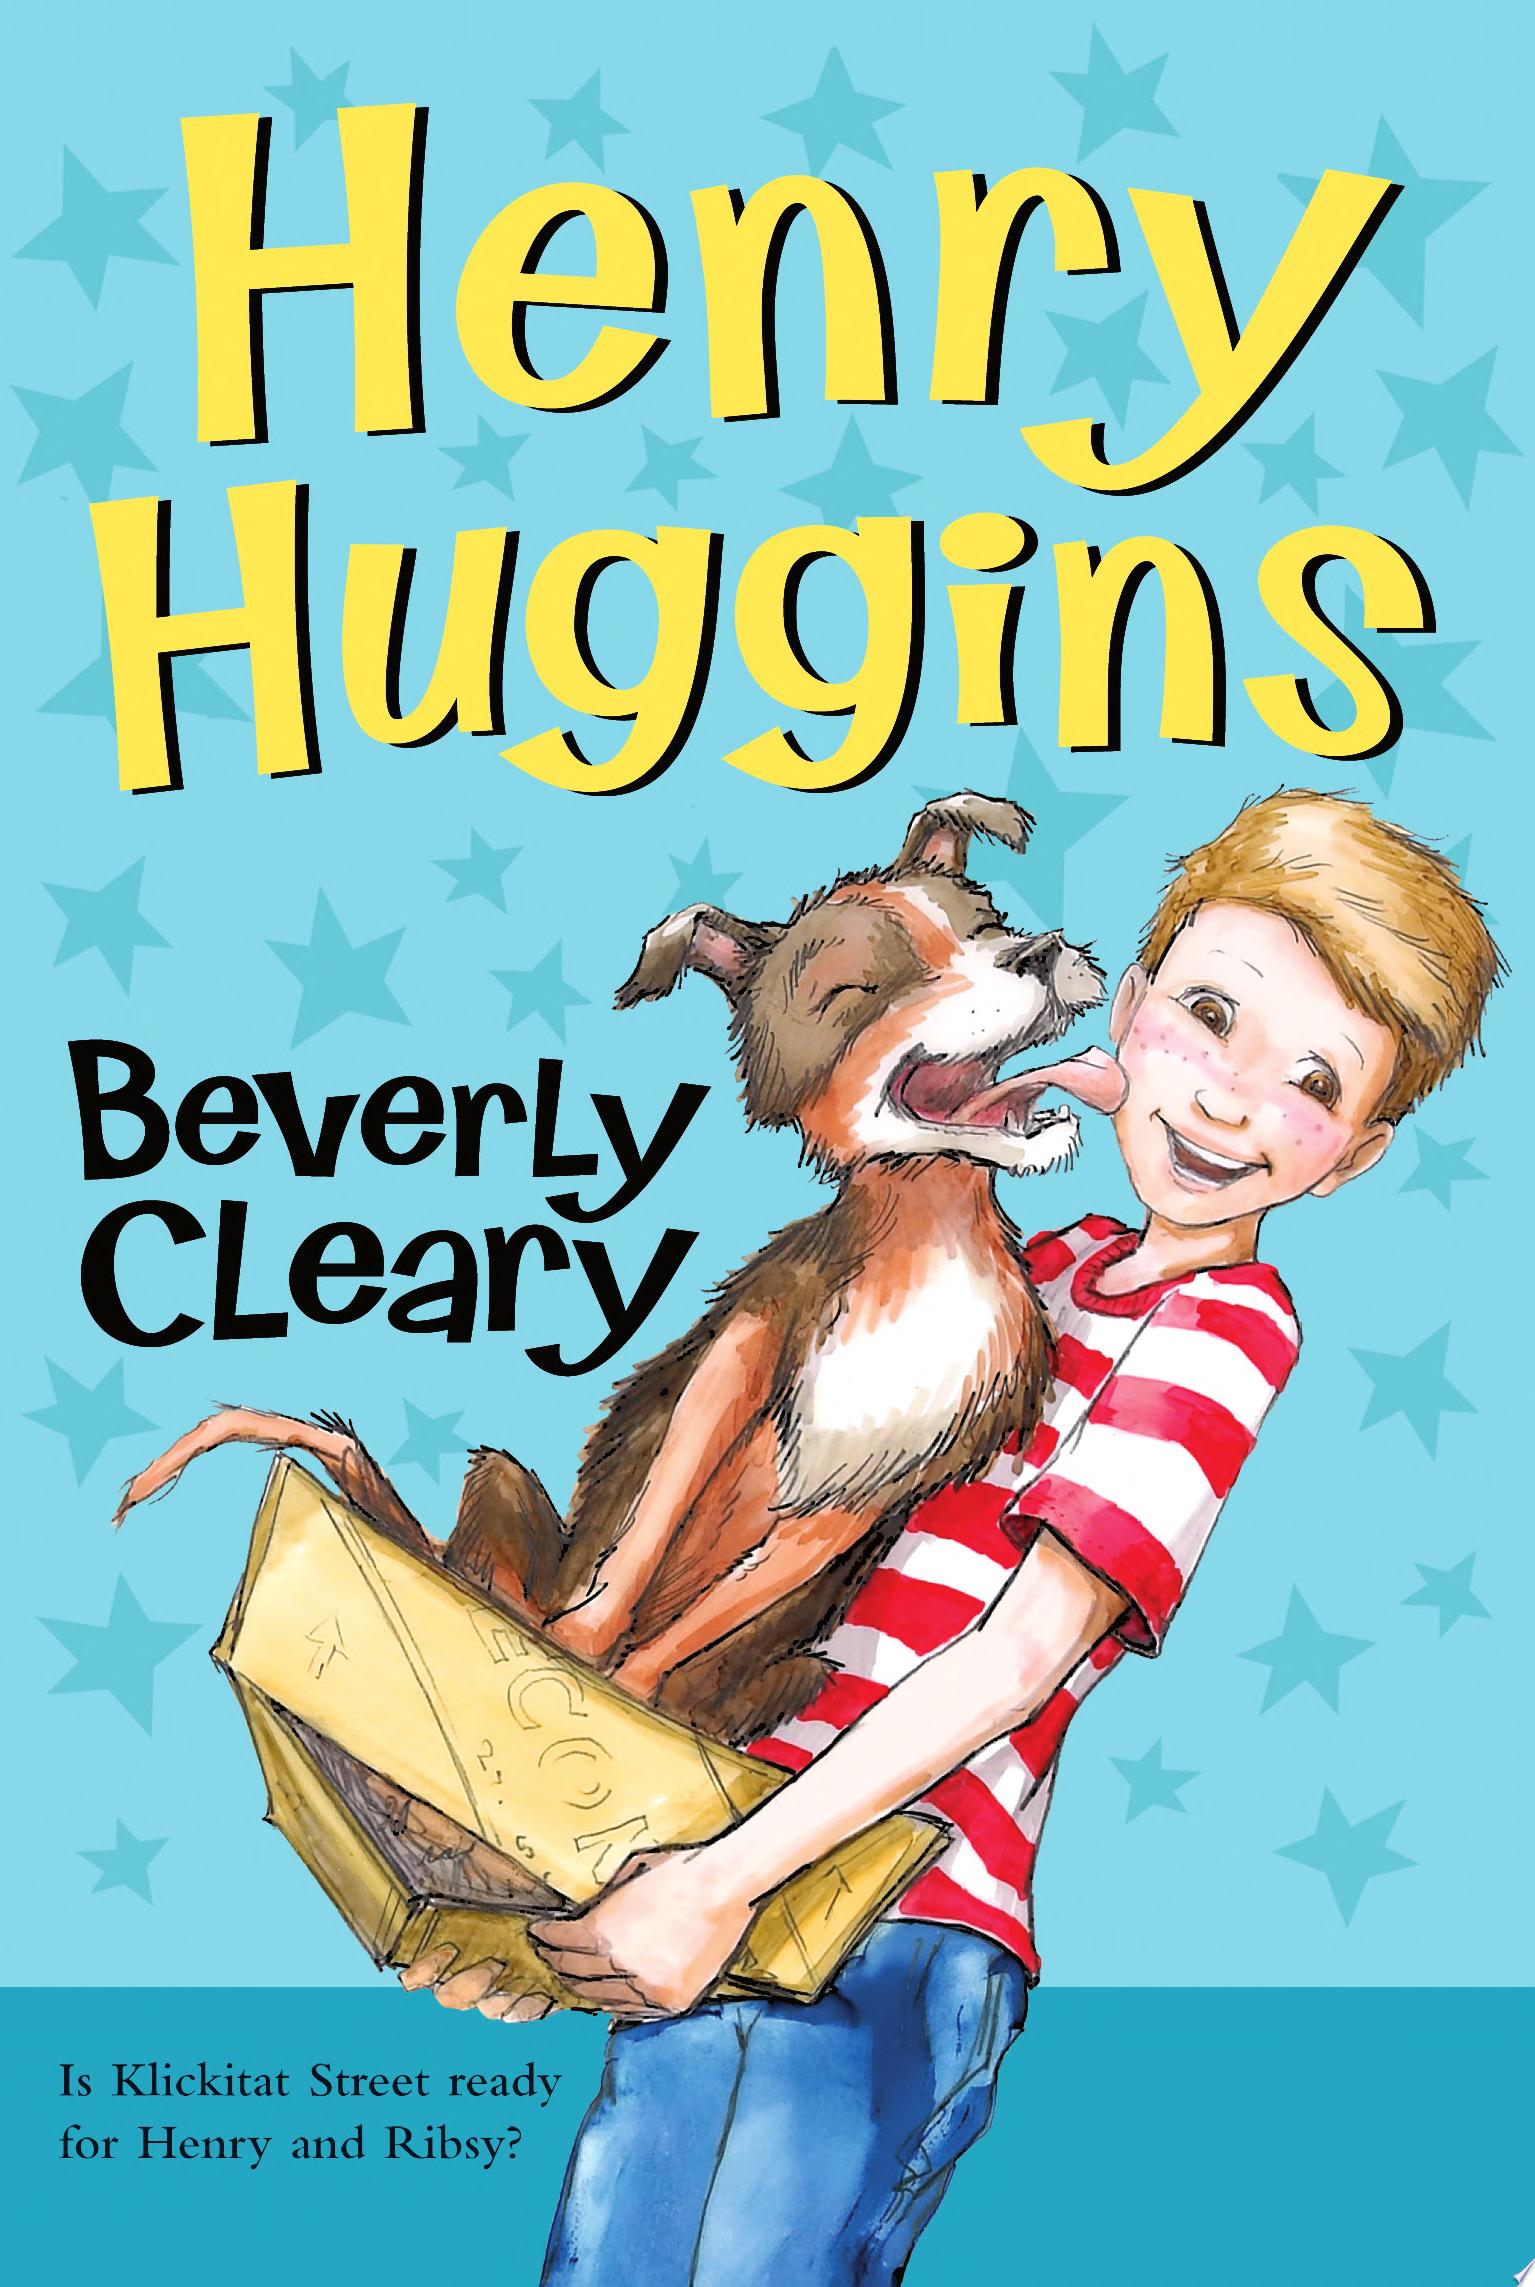 Image for "Henry Huggins"